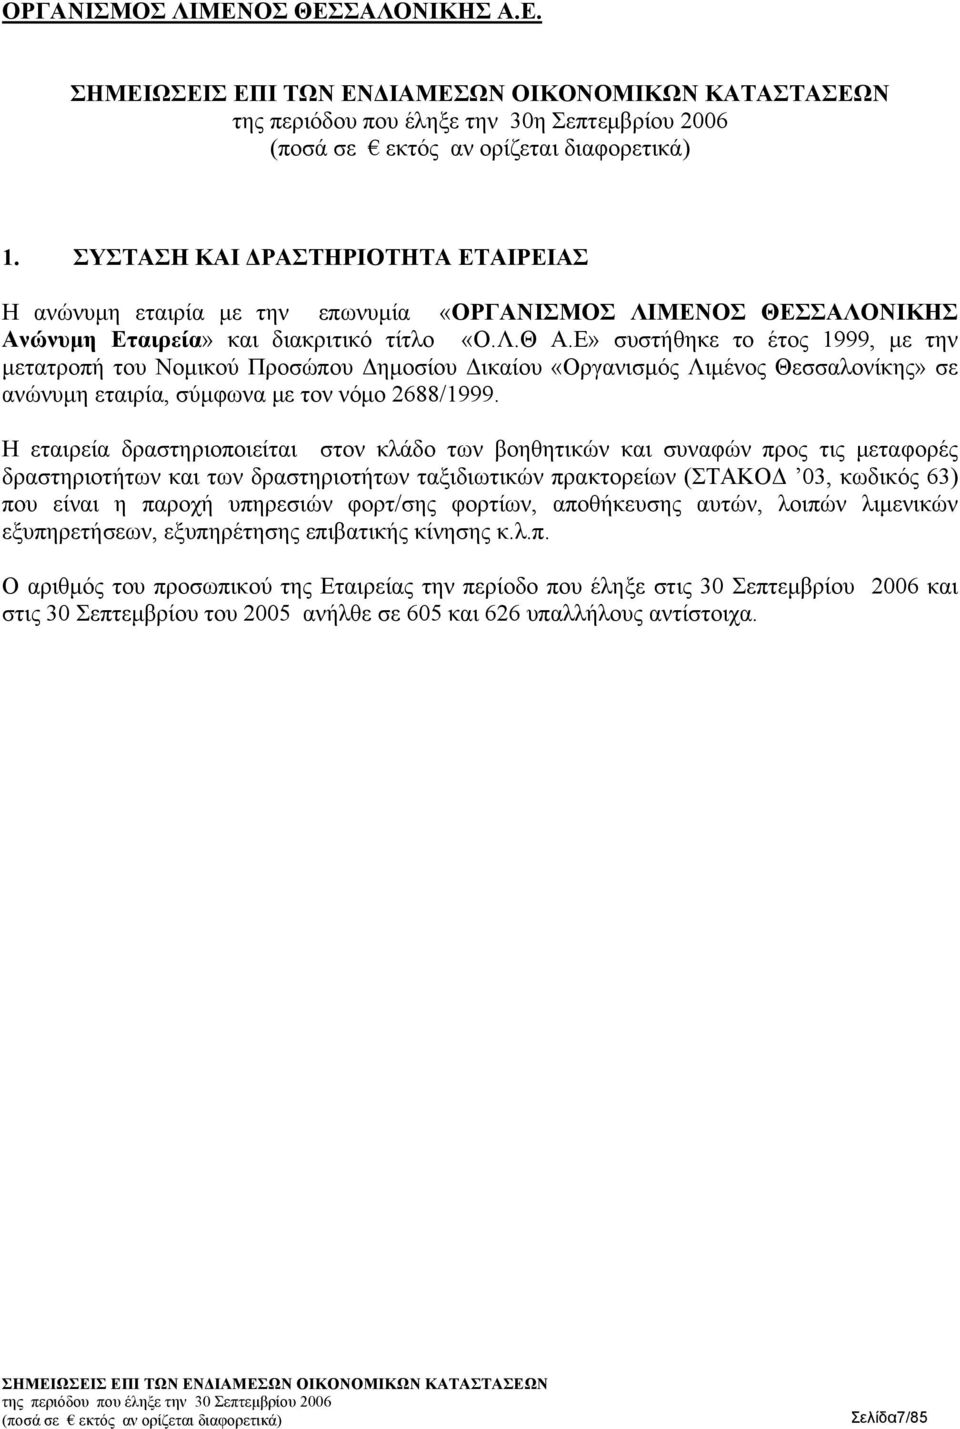 Ε» συστήθηκε το έτος 1999, με την μετατροπή του Νομικού Προσώπου Δημοσίου Δικαίου «Οργανισμός Λιμένος Θεσσαλονίκης» σε ανώνυμη εταιρία, σύμφωνα με τον νόμο 2688/1999.